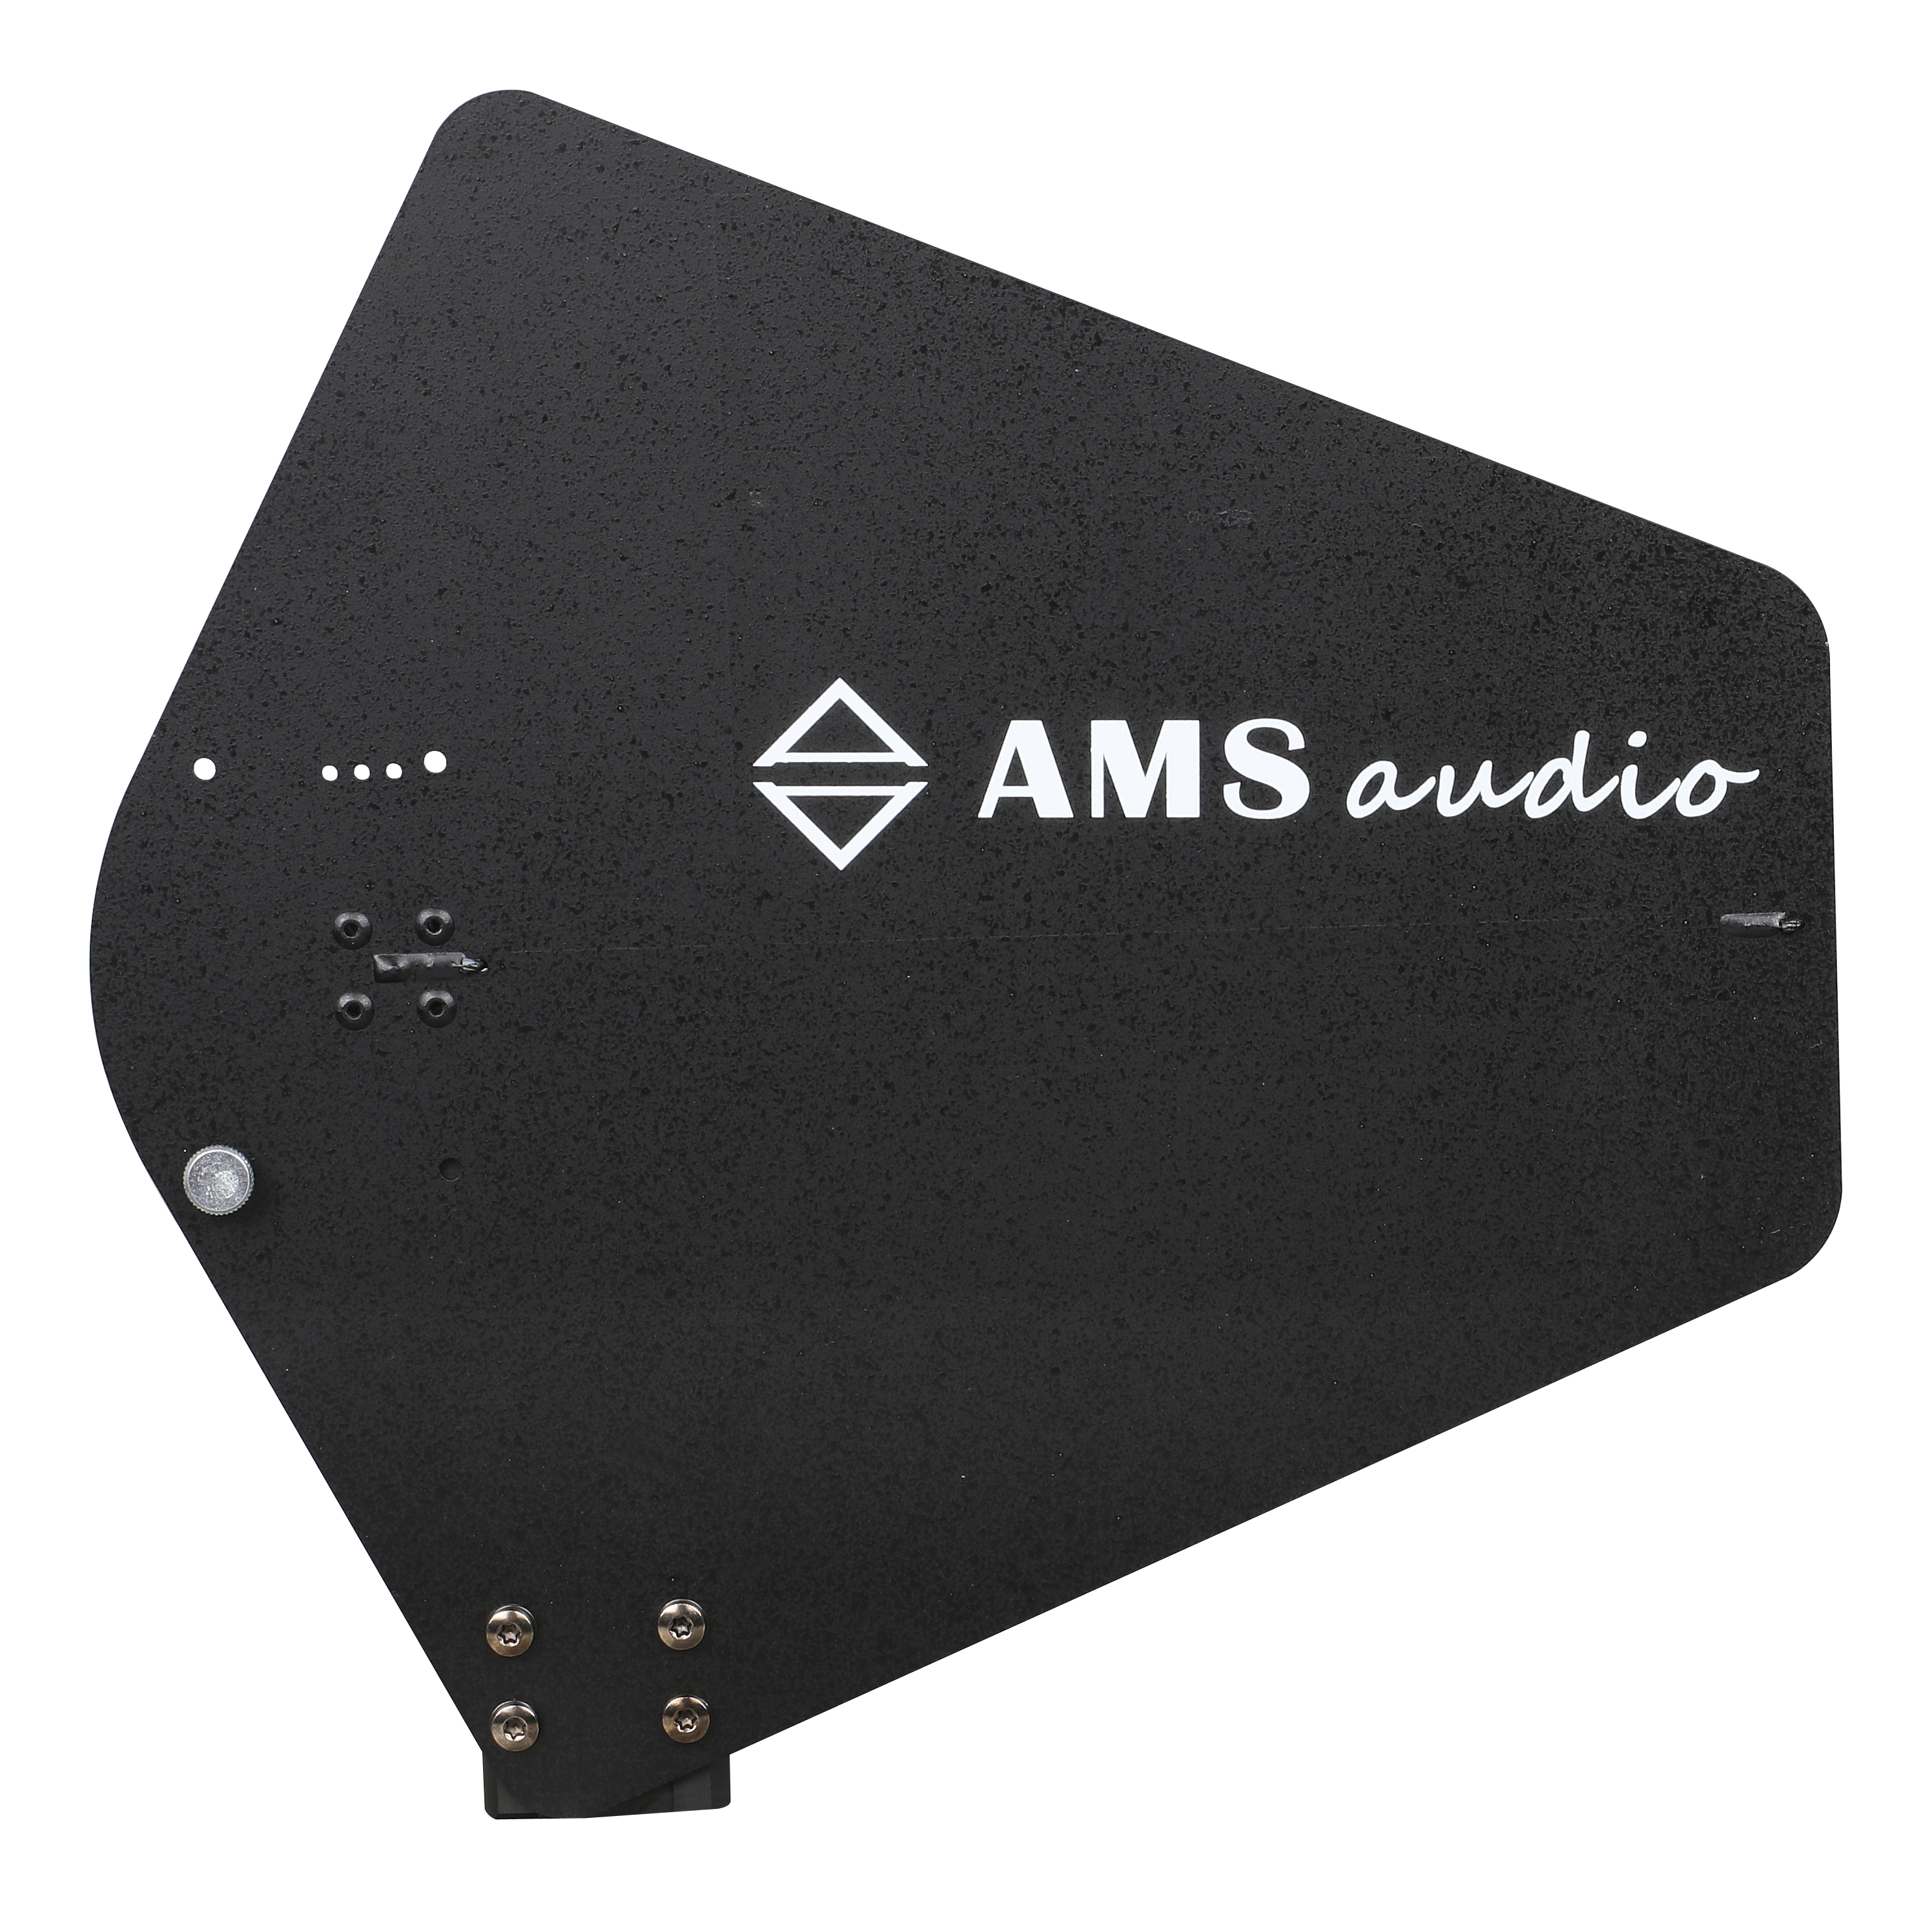 英国AMS天线放大器 宽频分配器 天线增益器 演出系统会议系统多功能系统商品主图